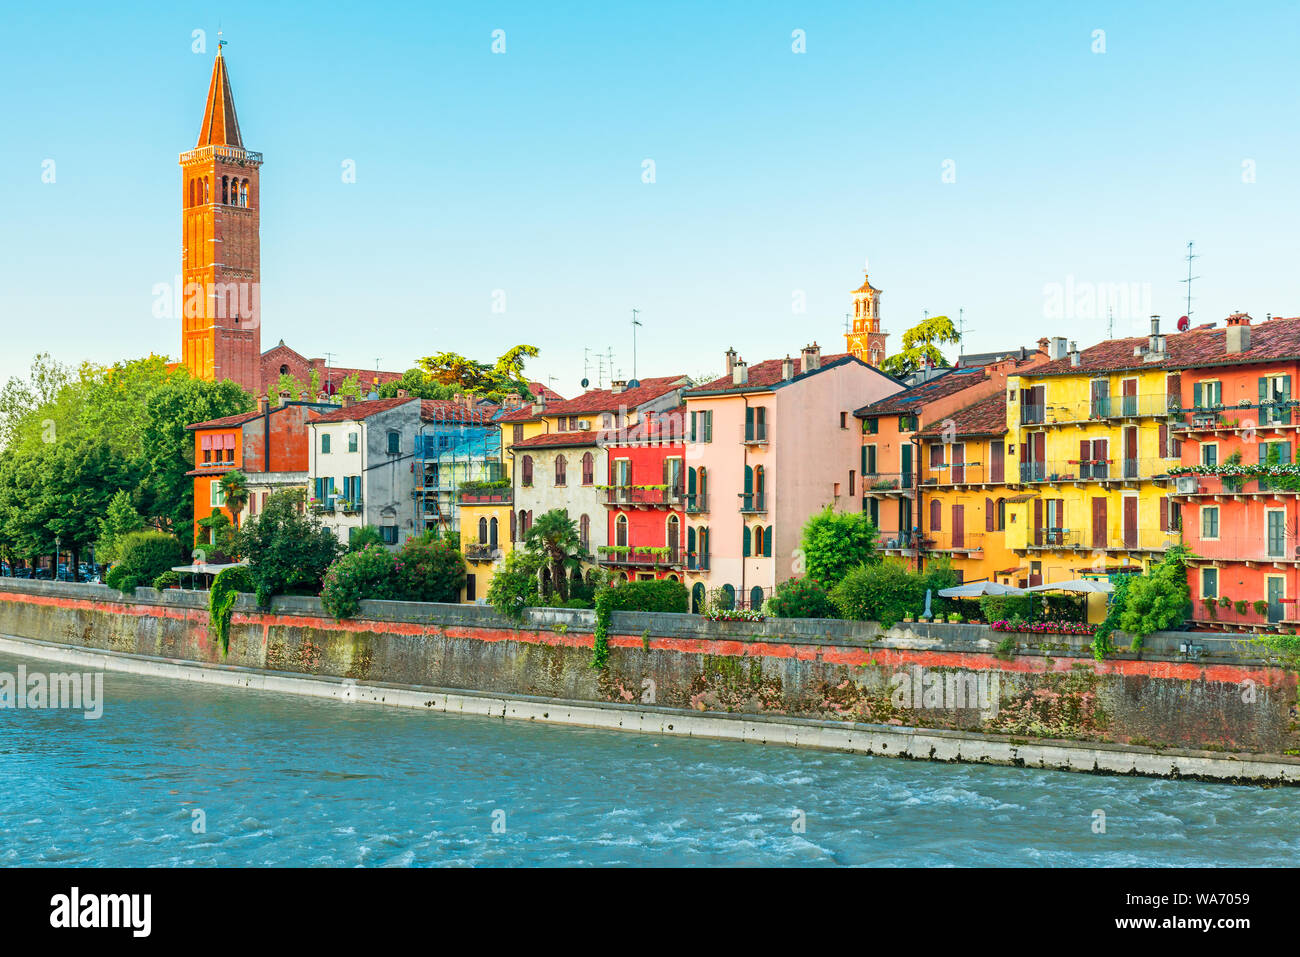 Gli edifici colorati e la vecchia chiesa medievale sulla banca del fiume di Verona, regione Veneto, Italia, Europa Foto Stock